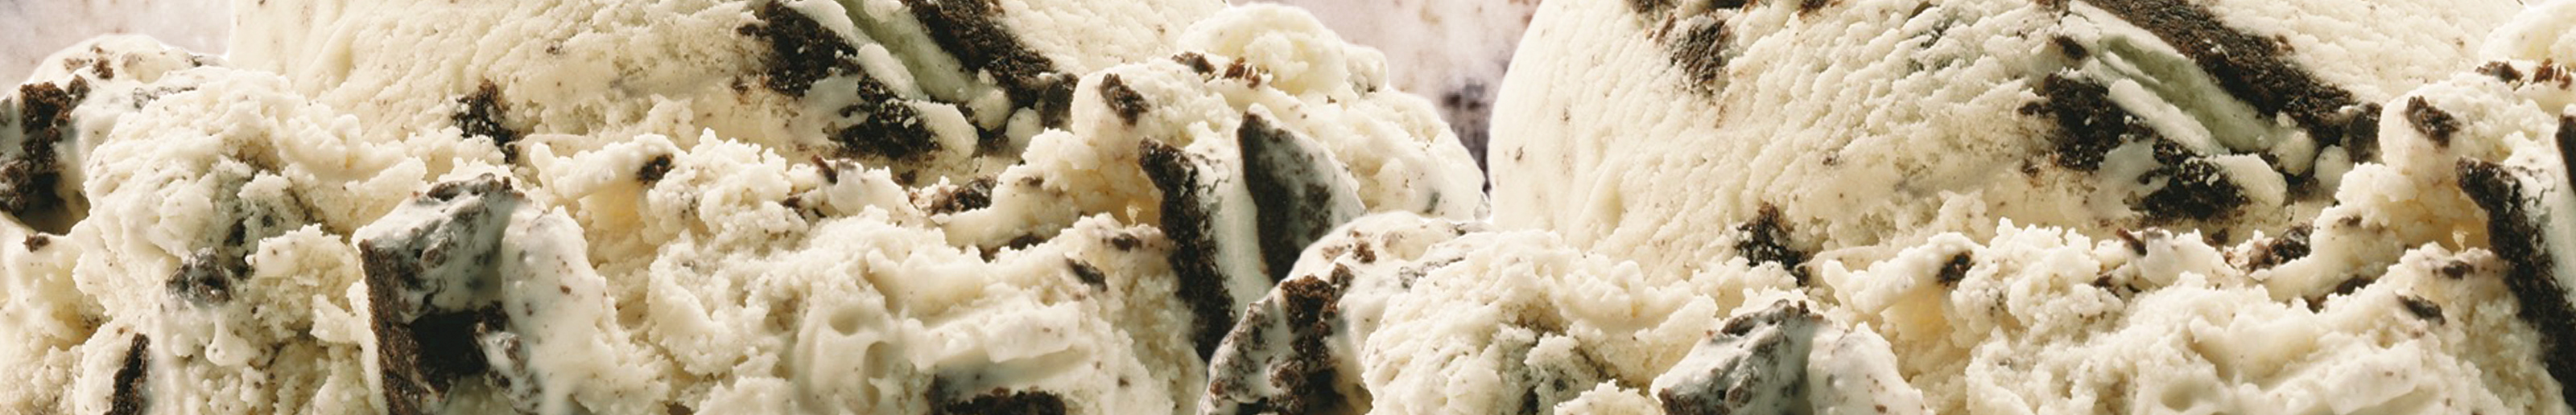 Brigham's Cookies 'n Cream Ice Cream